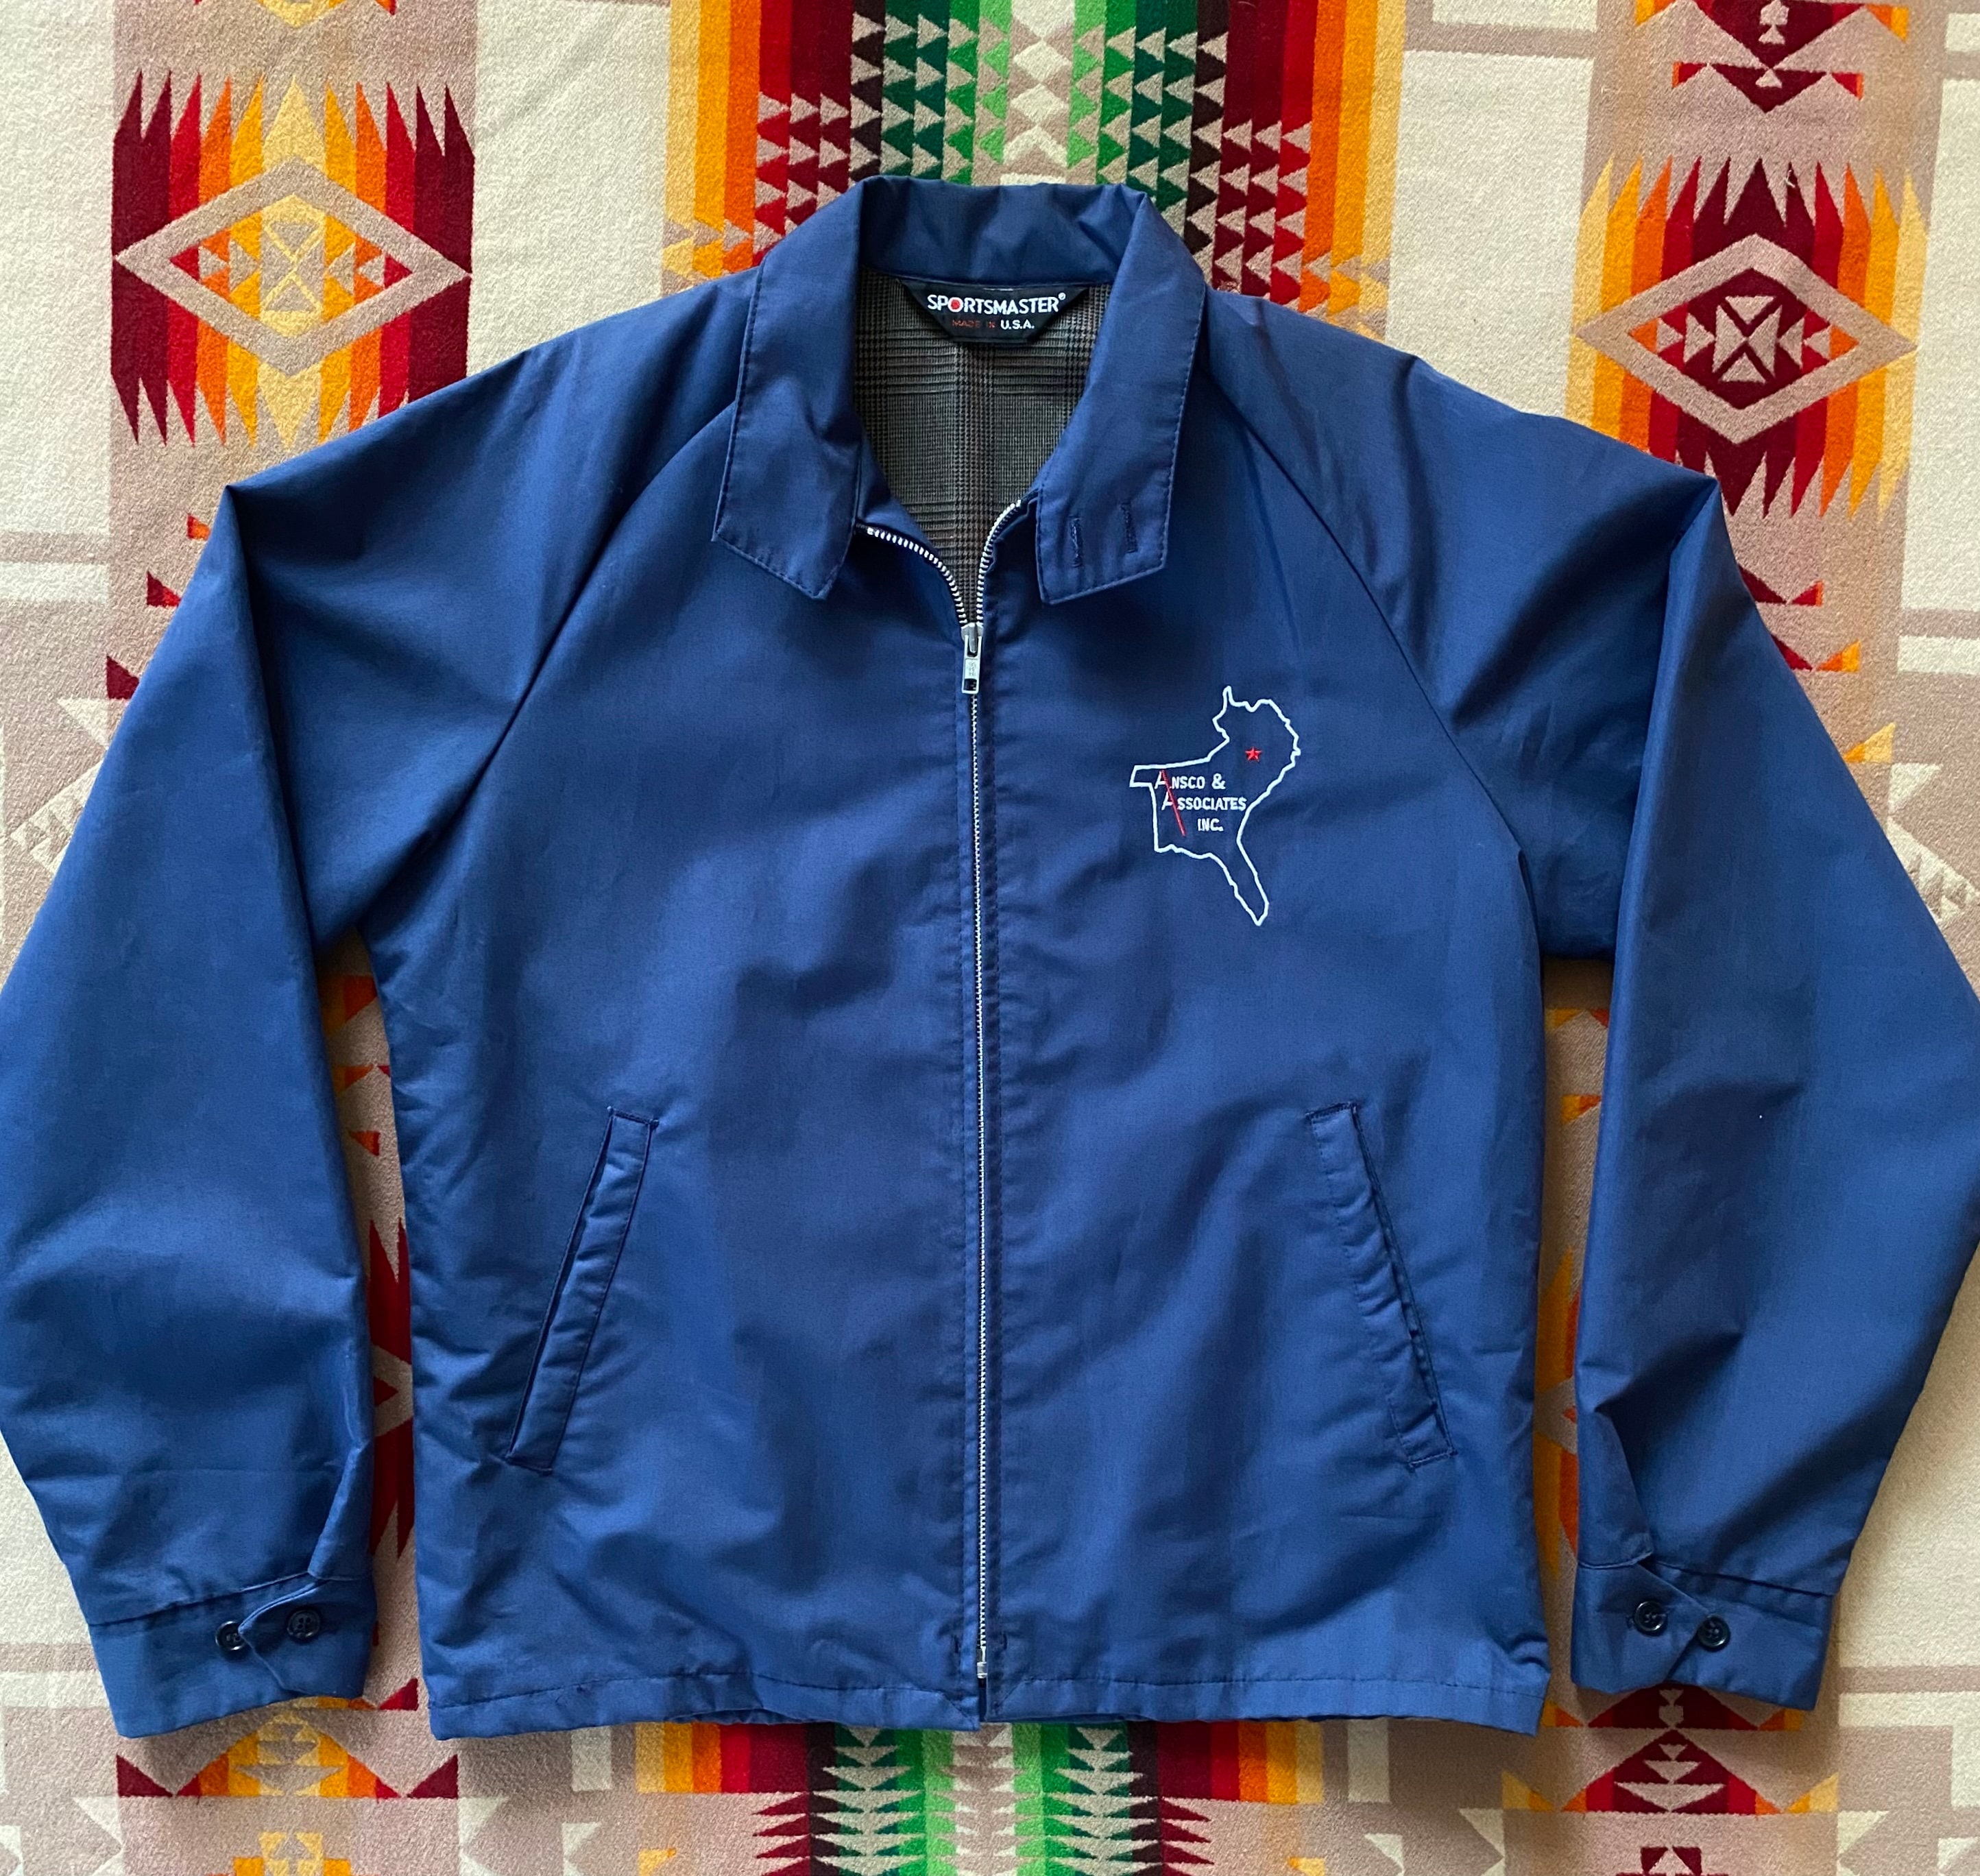 Size M. Vintage 70s Sportsmaster Jacket. Made in USA Baracuta